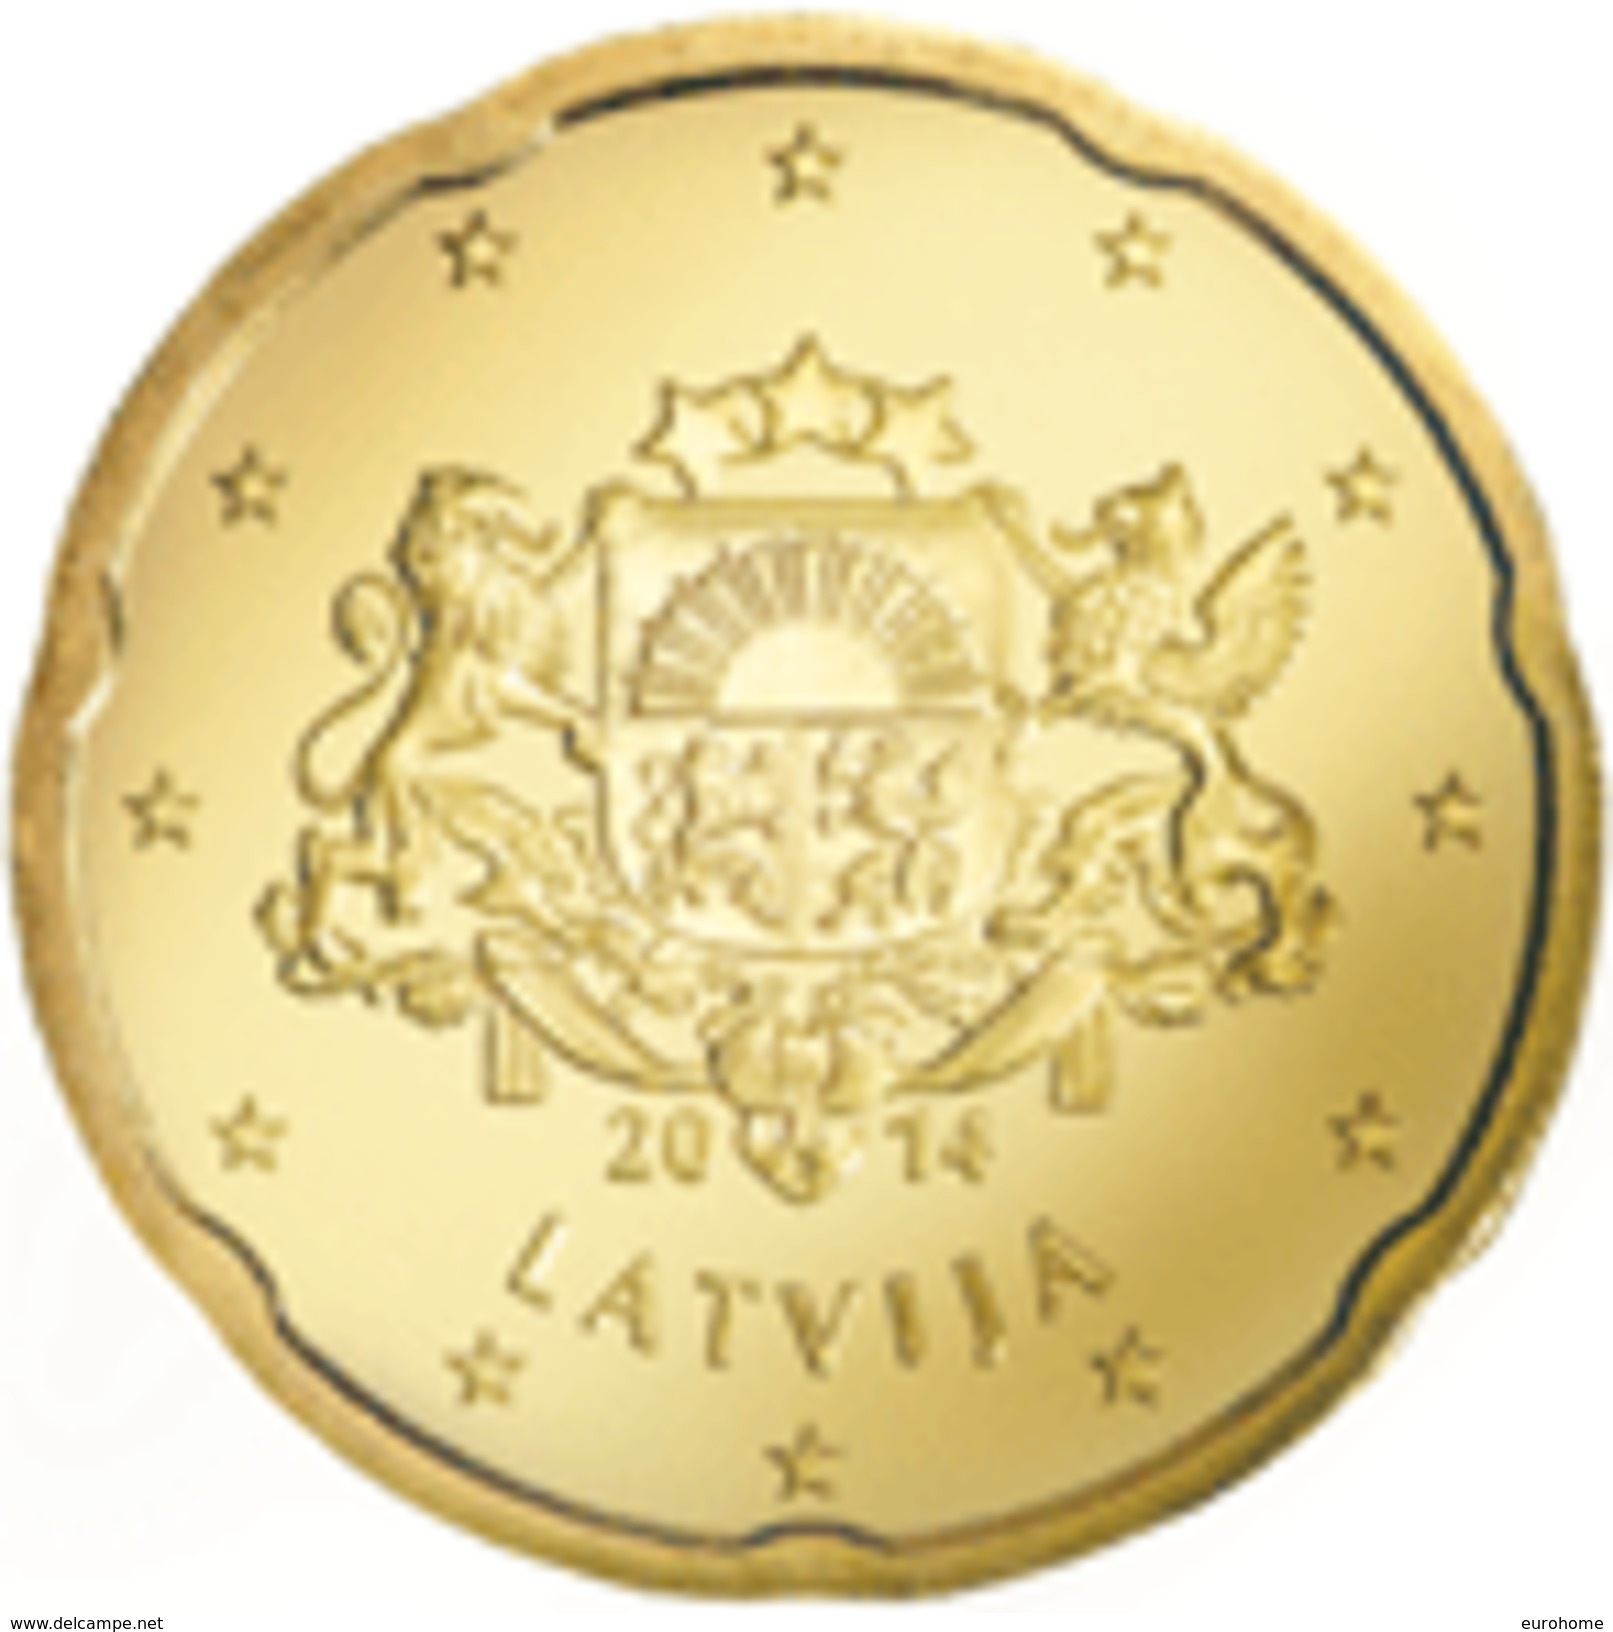 Letland 2016    20 Cent  Zeer Zeldzaam 5.000 Ex.  EXTREME RARE      UNC Uit De BU  UNC Du Coffret !! - Lettonie